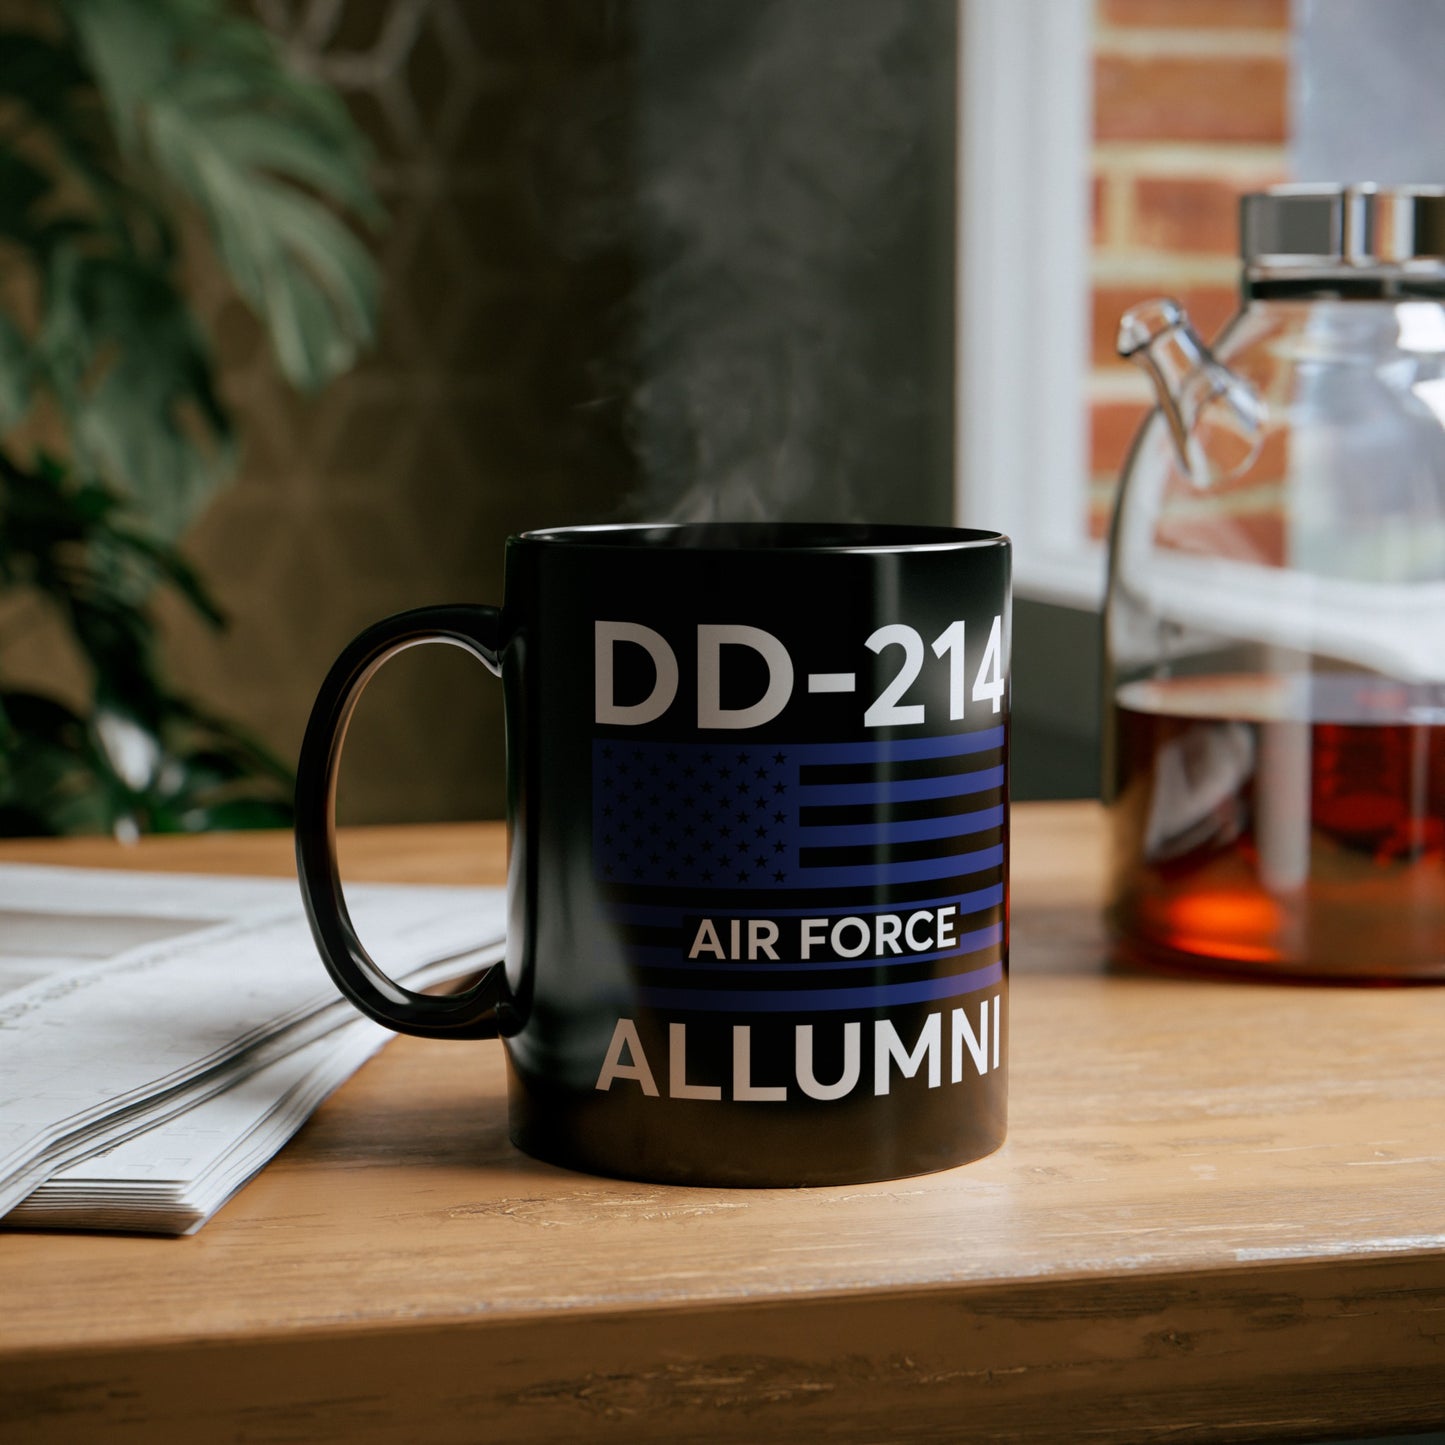 DD 214 Alumni Airforce Mug - 11 oz